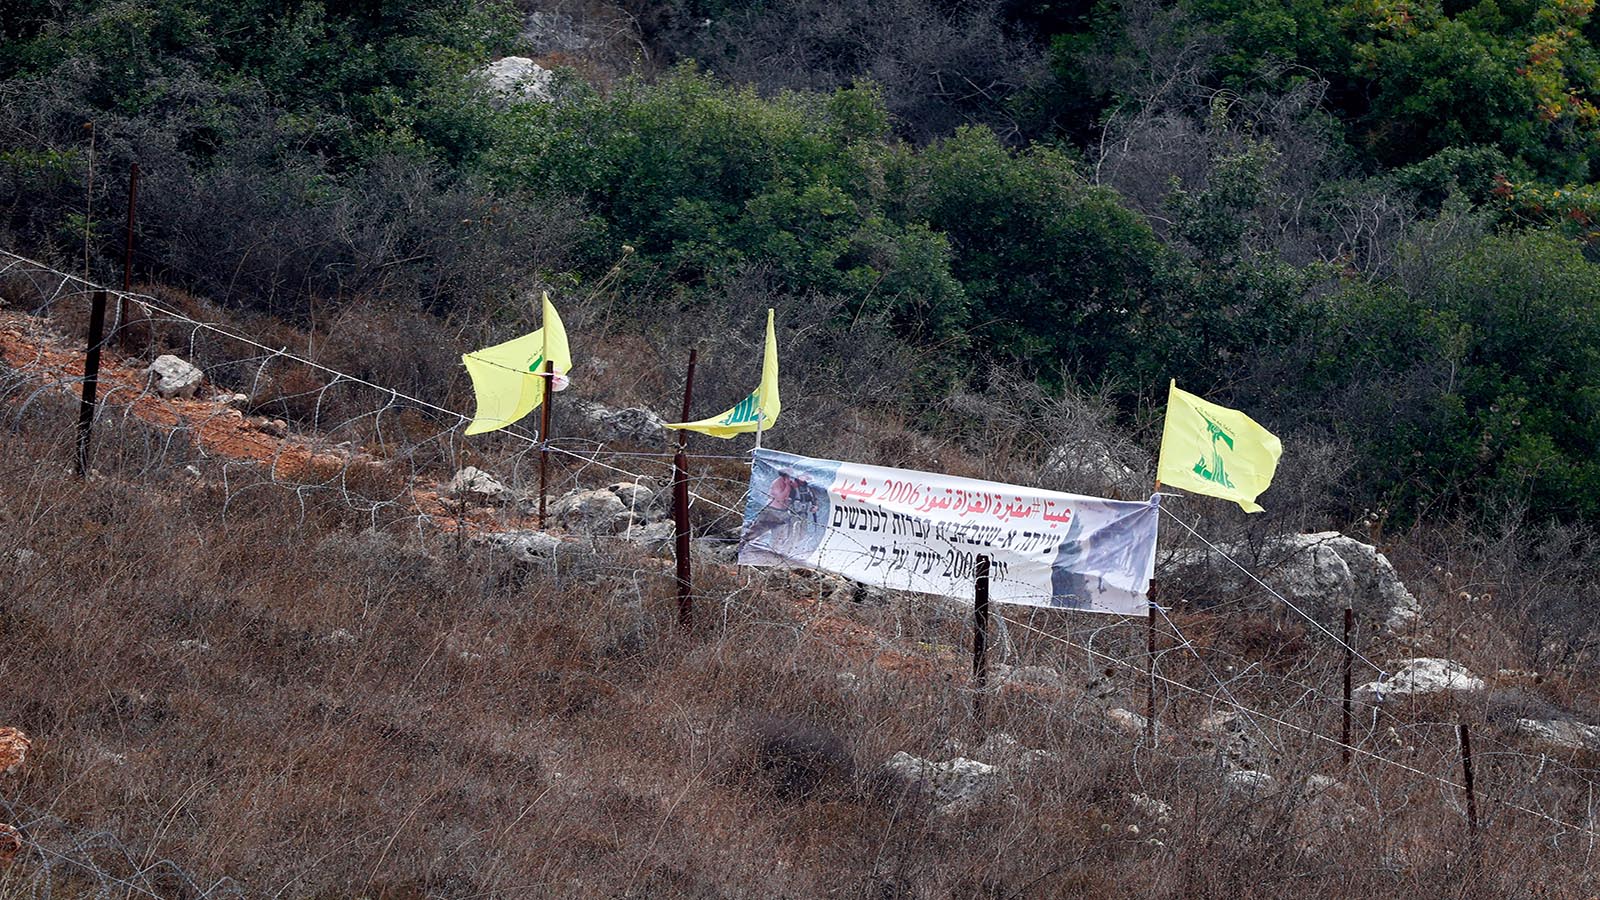 أفكار إسرائيلية لـ"تدمير"حزب الله: عقوبات واحتلال وتجسس